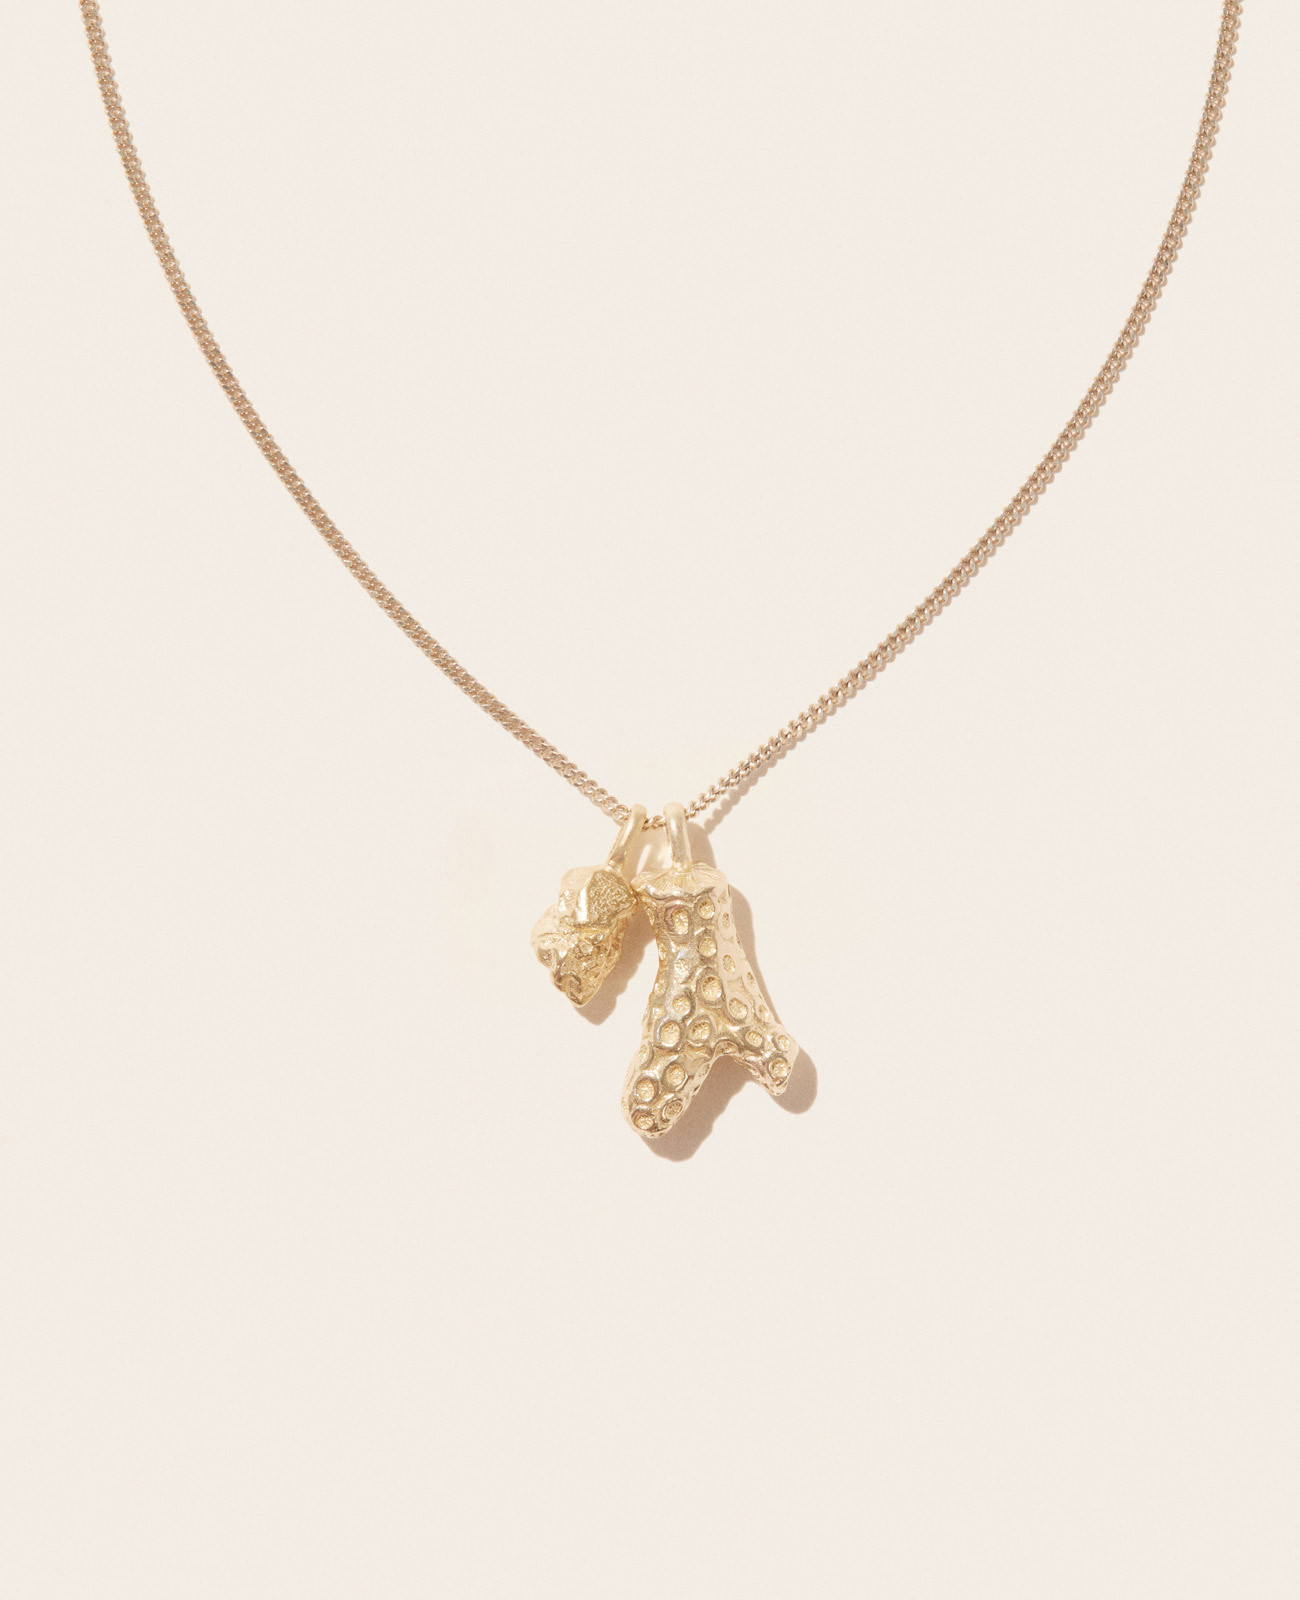 JUNE GOLD necklace pascale monvoisin jewelry paris